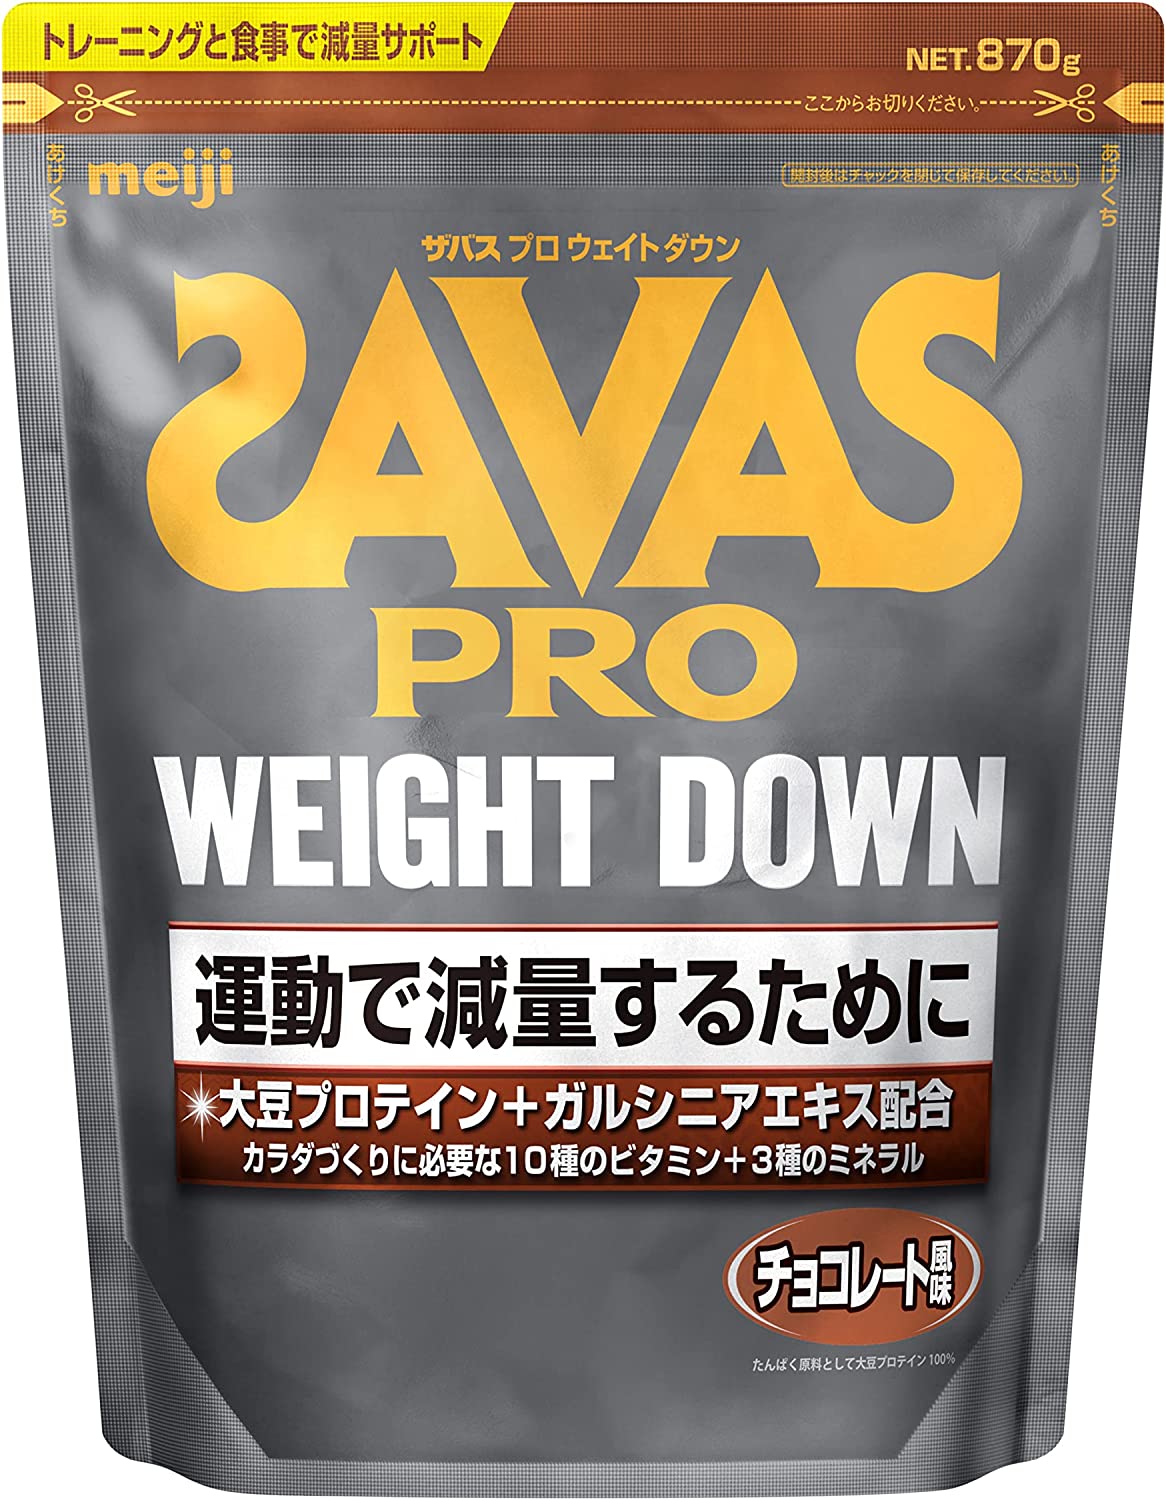 Meiji, Savas Weight Down- Протеиновый комплекс для снижения веса с шоколадным вкусом, на 45 порций.